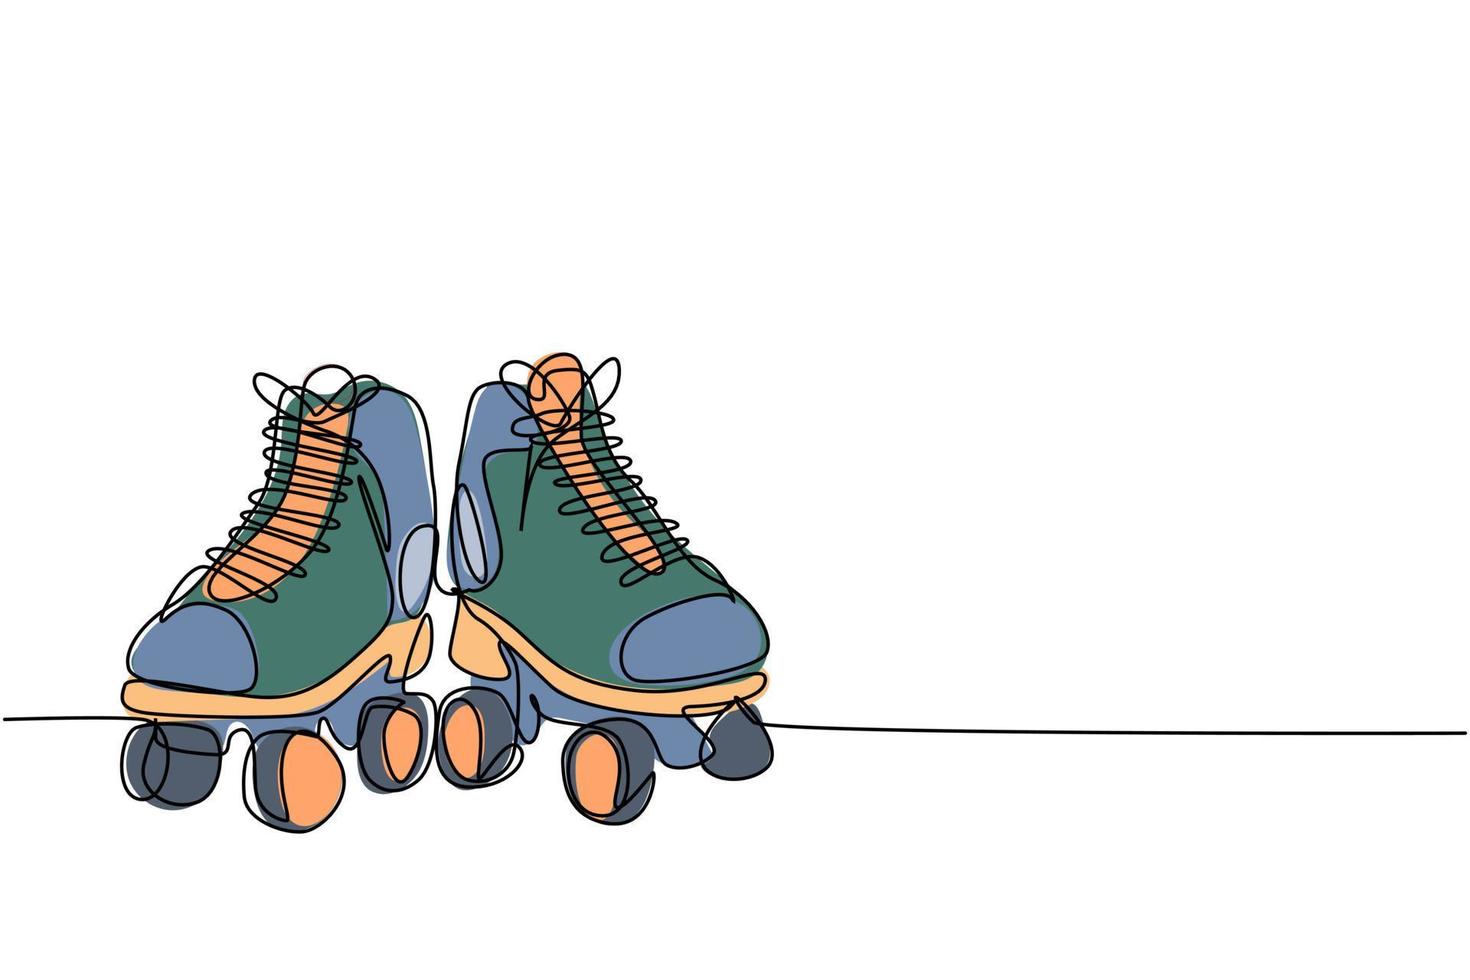 singolo disegno a linea continua paio di vecchie scarpe da skate quad roller in plastica retrò. vintage classico concetto di sport estremo una linea disegnare disegno vettoriale illustrazione grafica